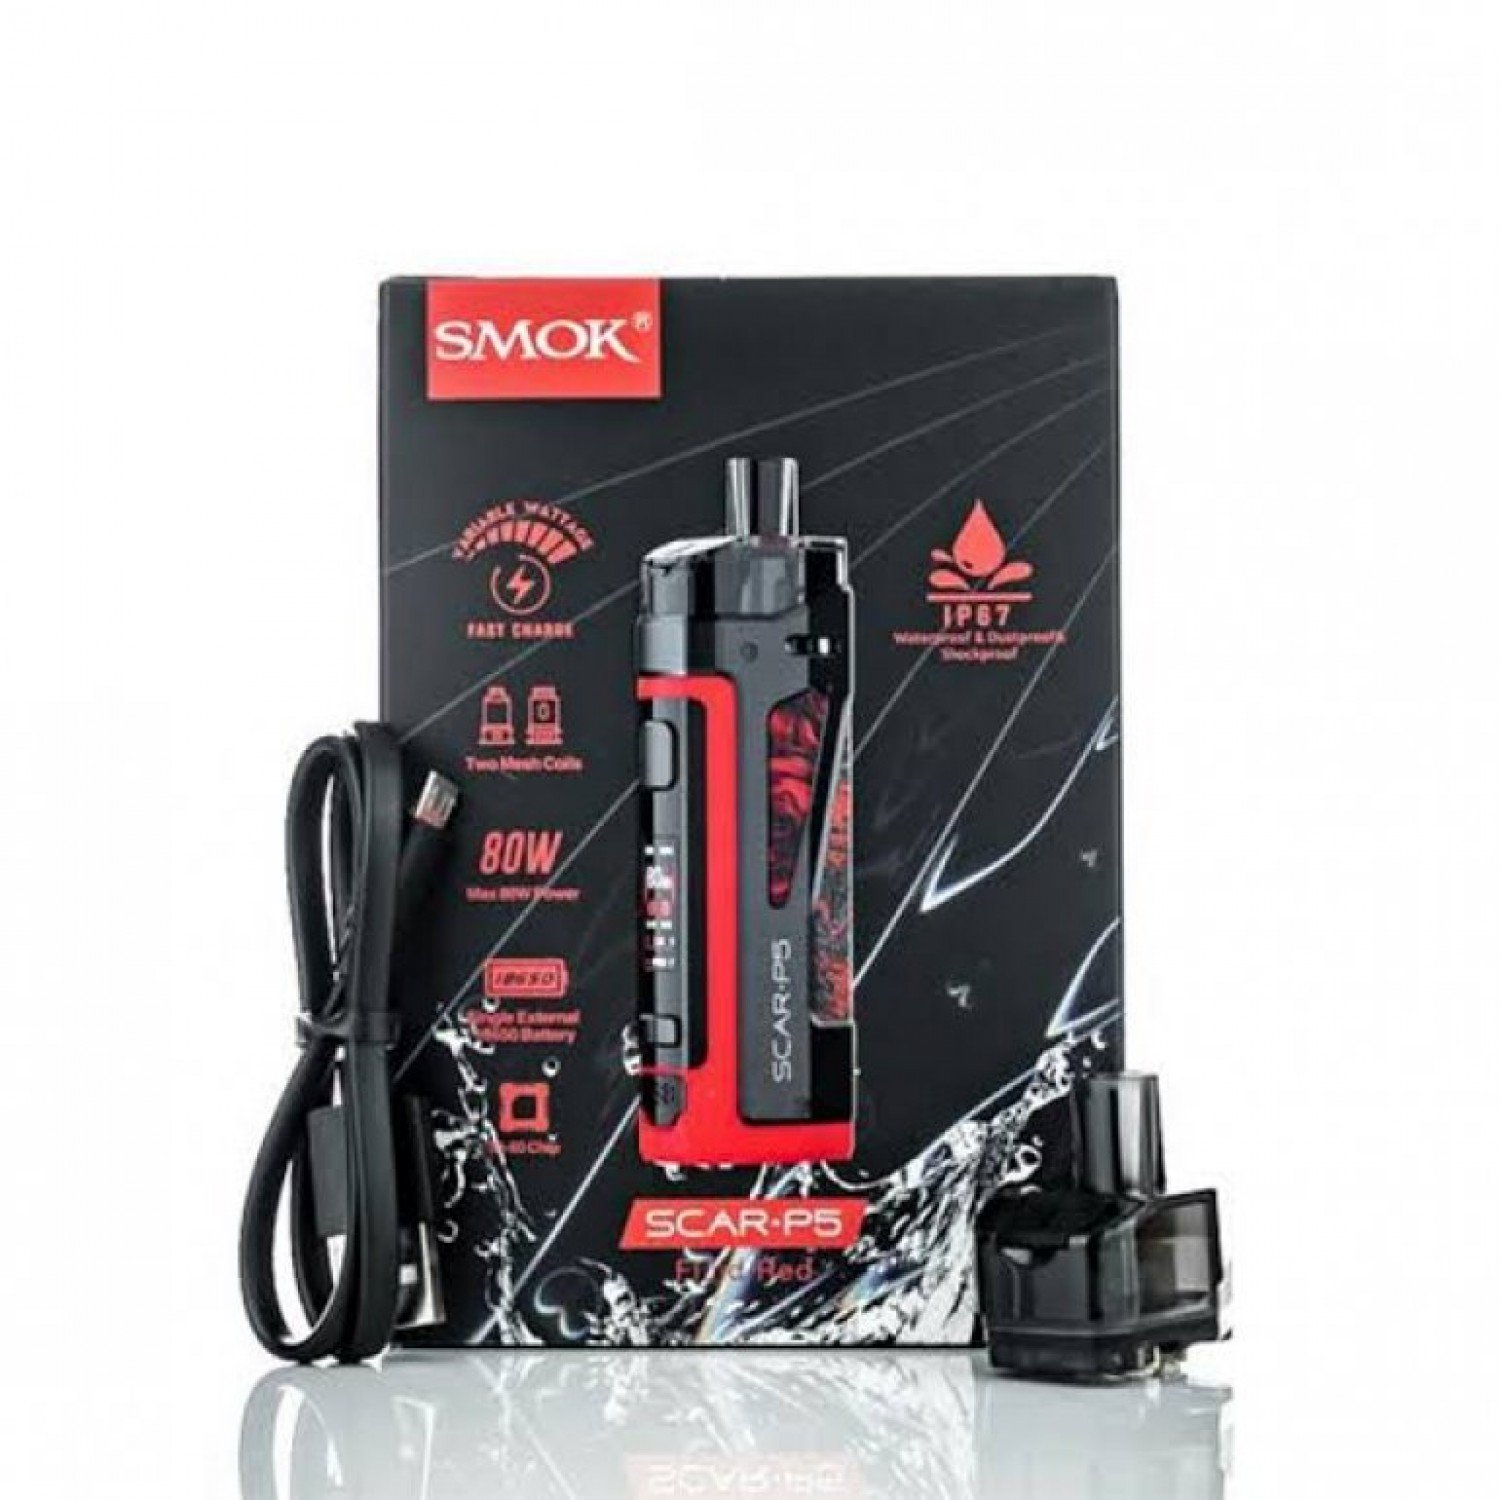 Smok - Scar P5 80 w Elektronik Sigara Kit